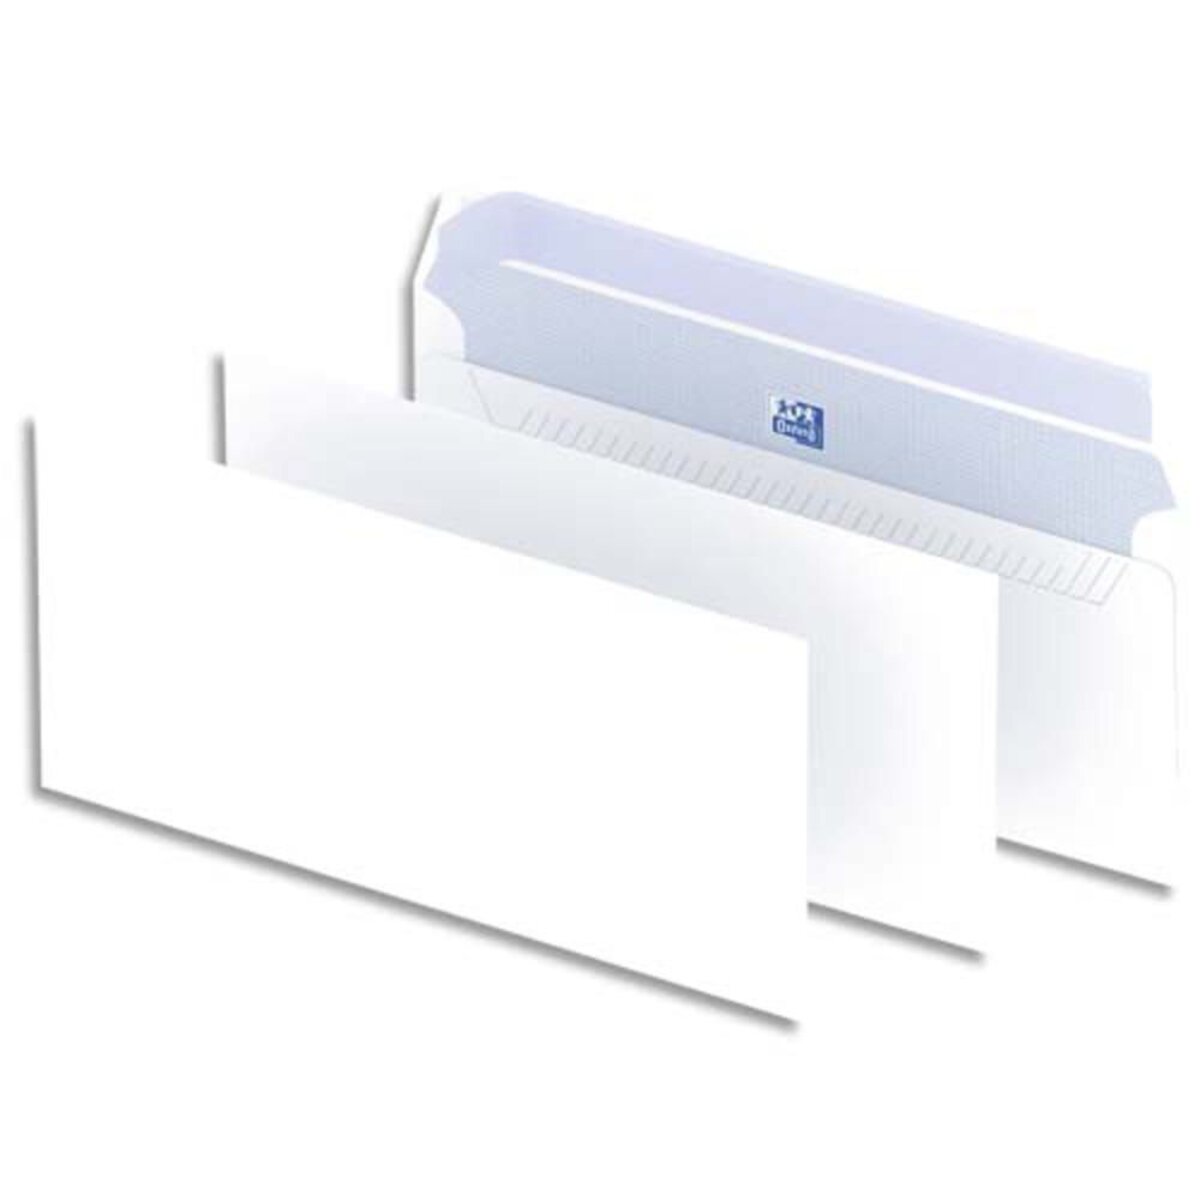 Enveloppe blanche standard à fenetre 110 x 220 mm (fenetre